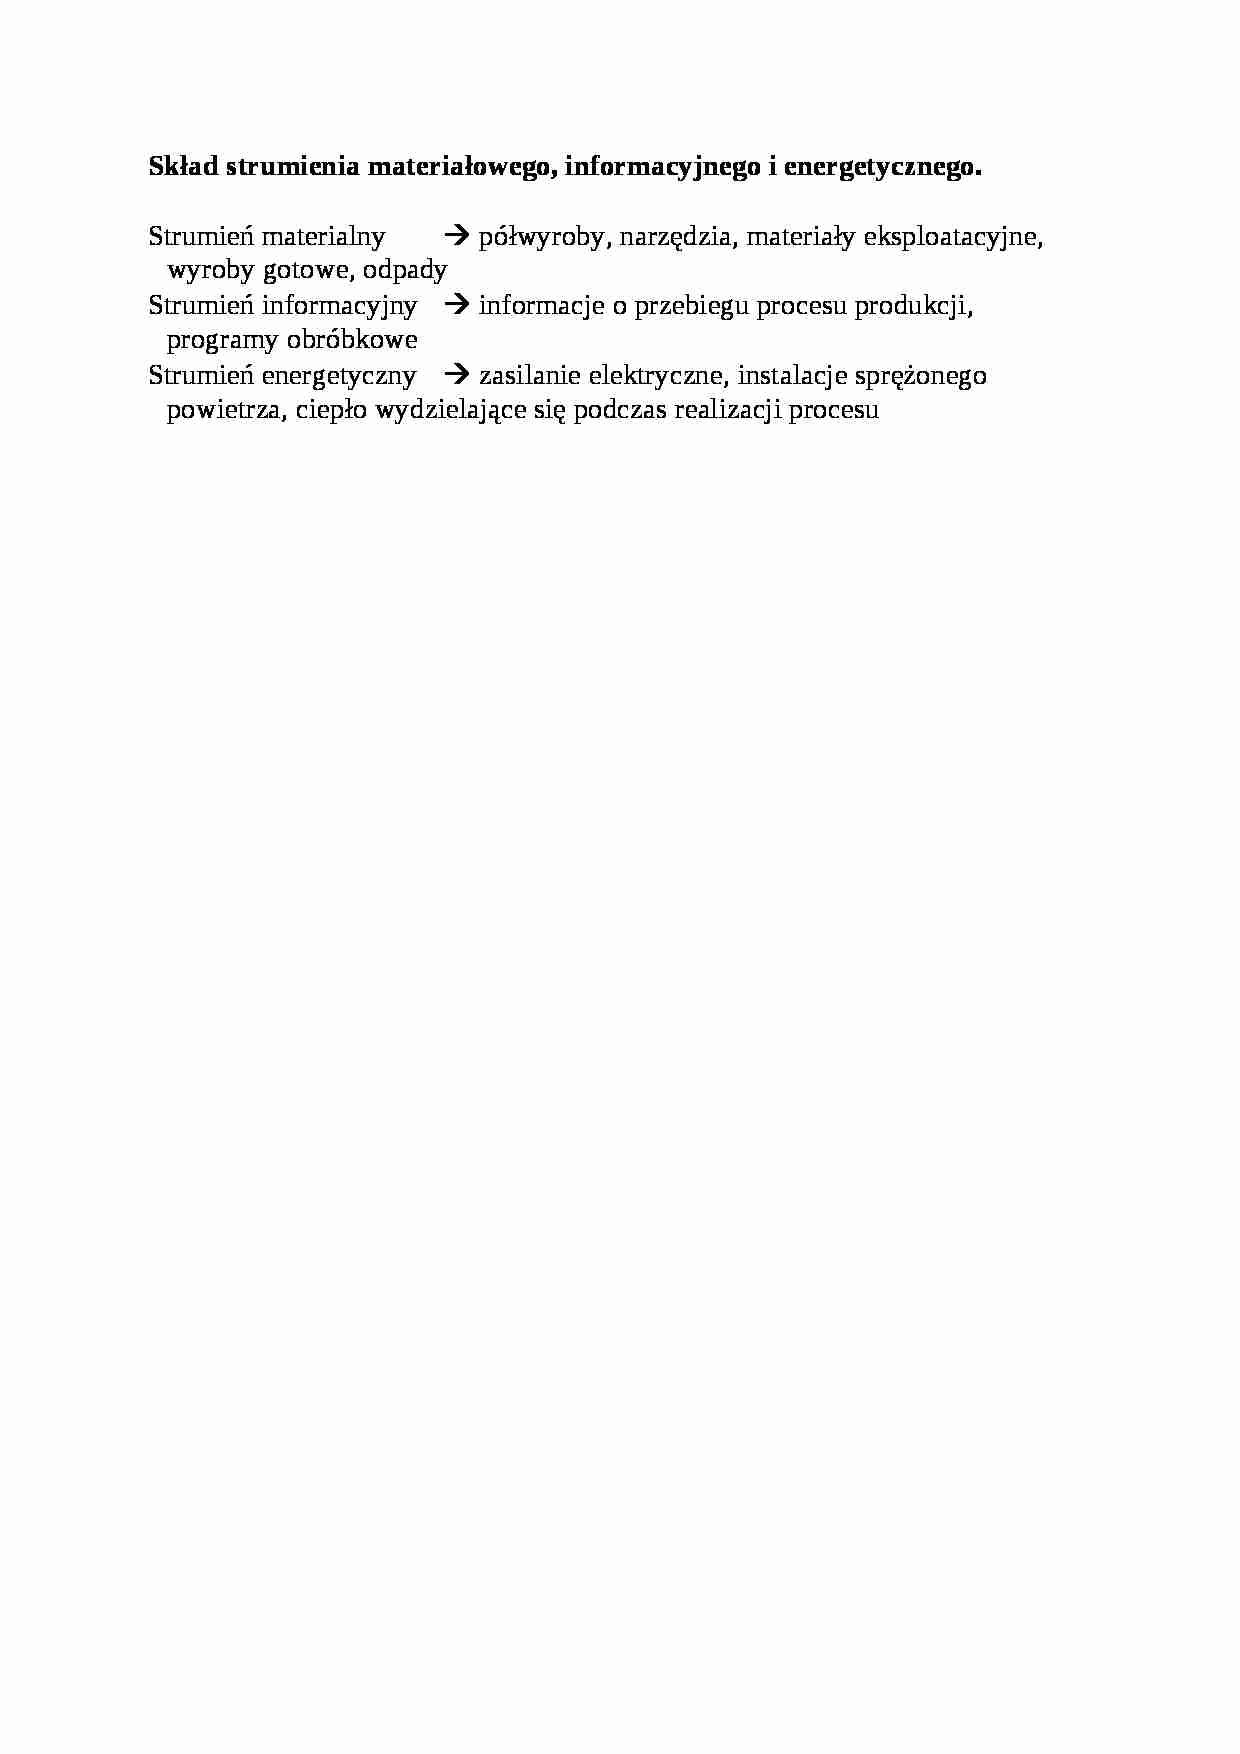 Skład strumienia materiałowego - opracowanie - strona 1